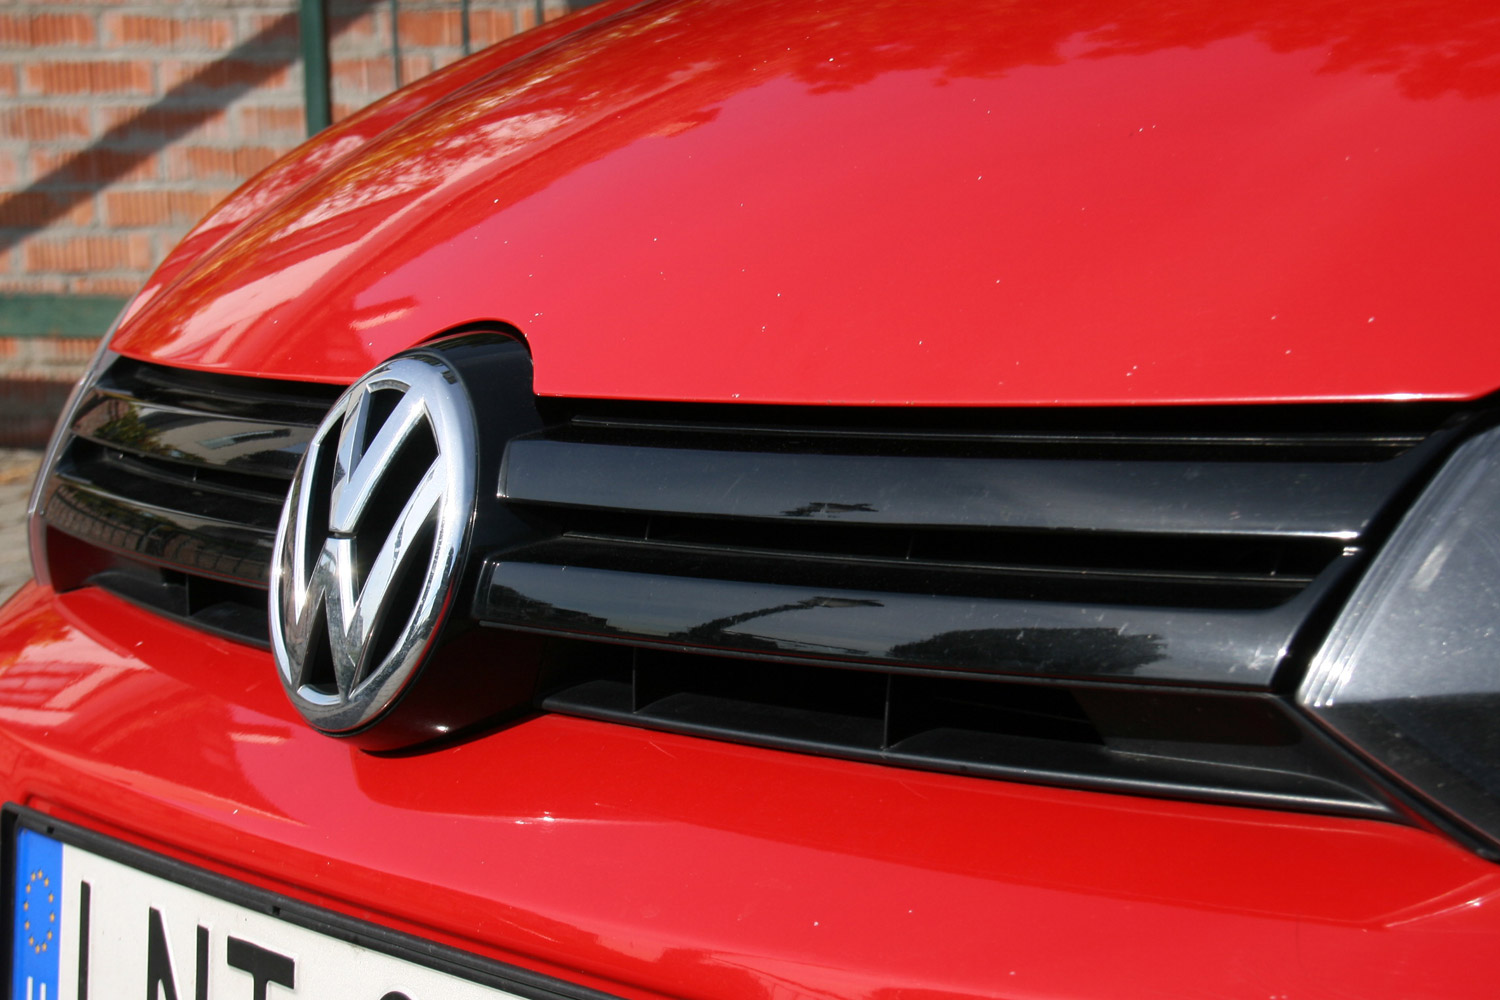 Használt autó: kockázatos Volkswagen Golfot venni? 6